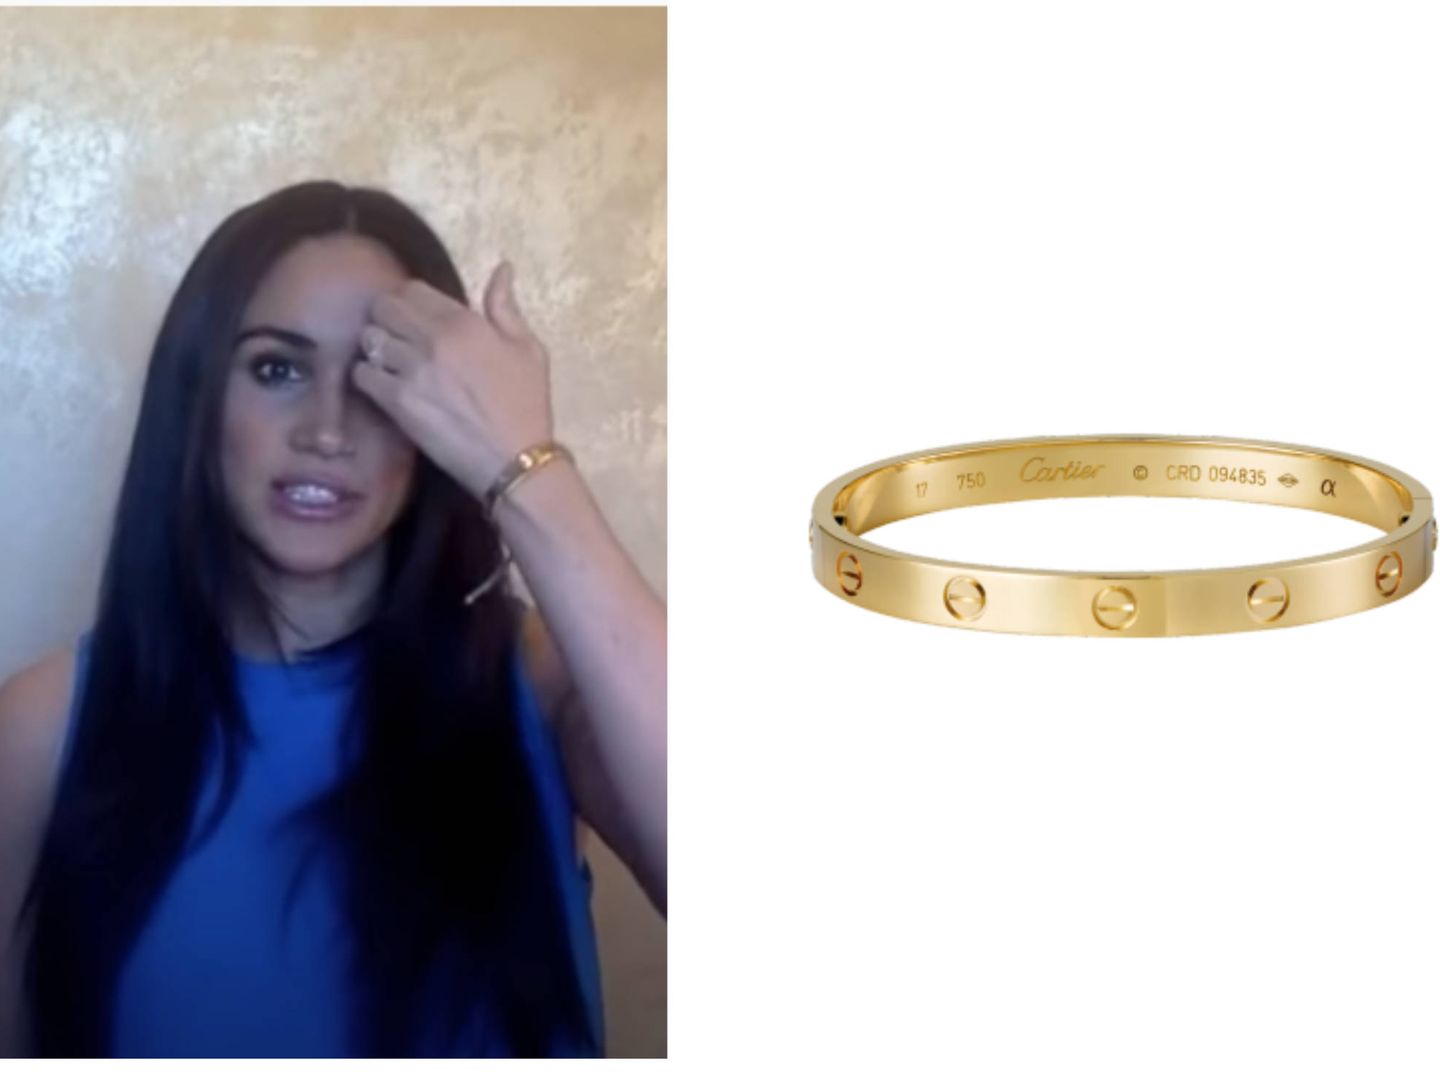 La pulsera de Cartier que lleva Meghan en el vídeo. (Cortesía)